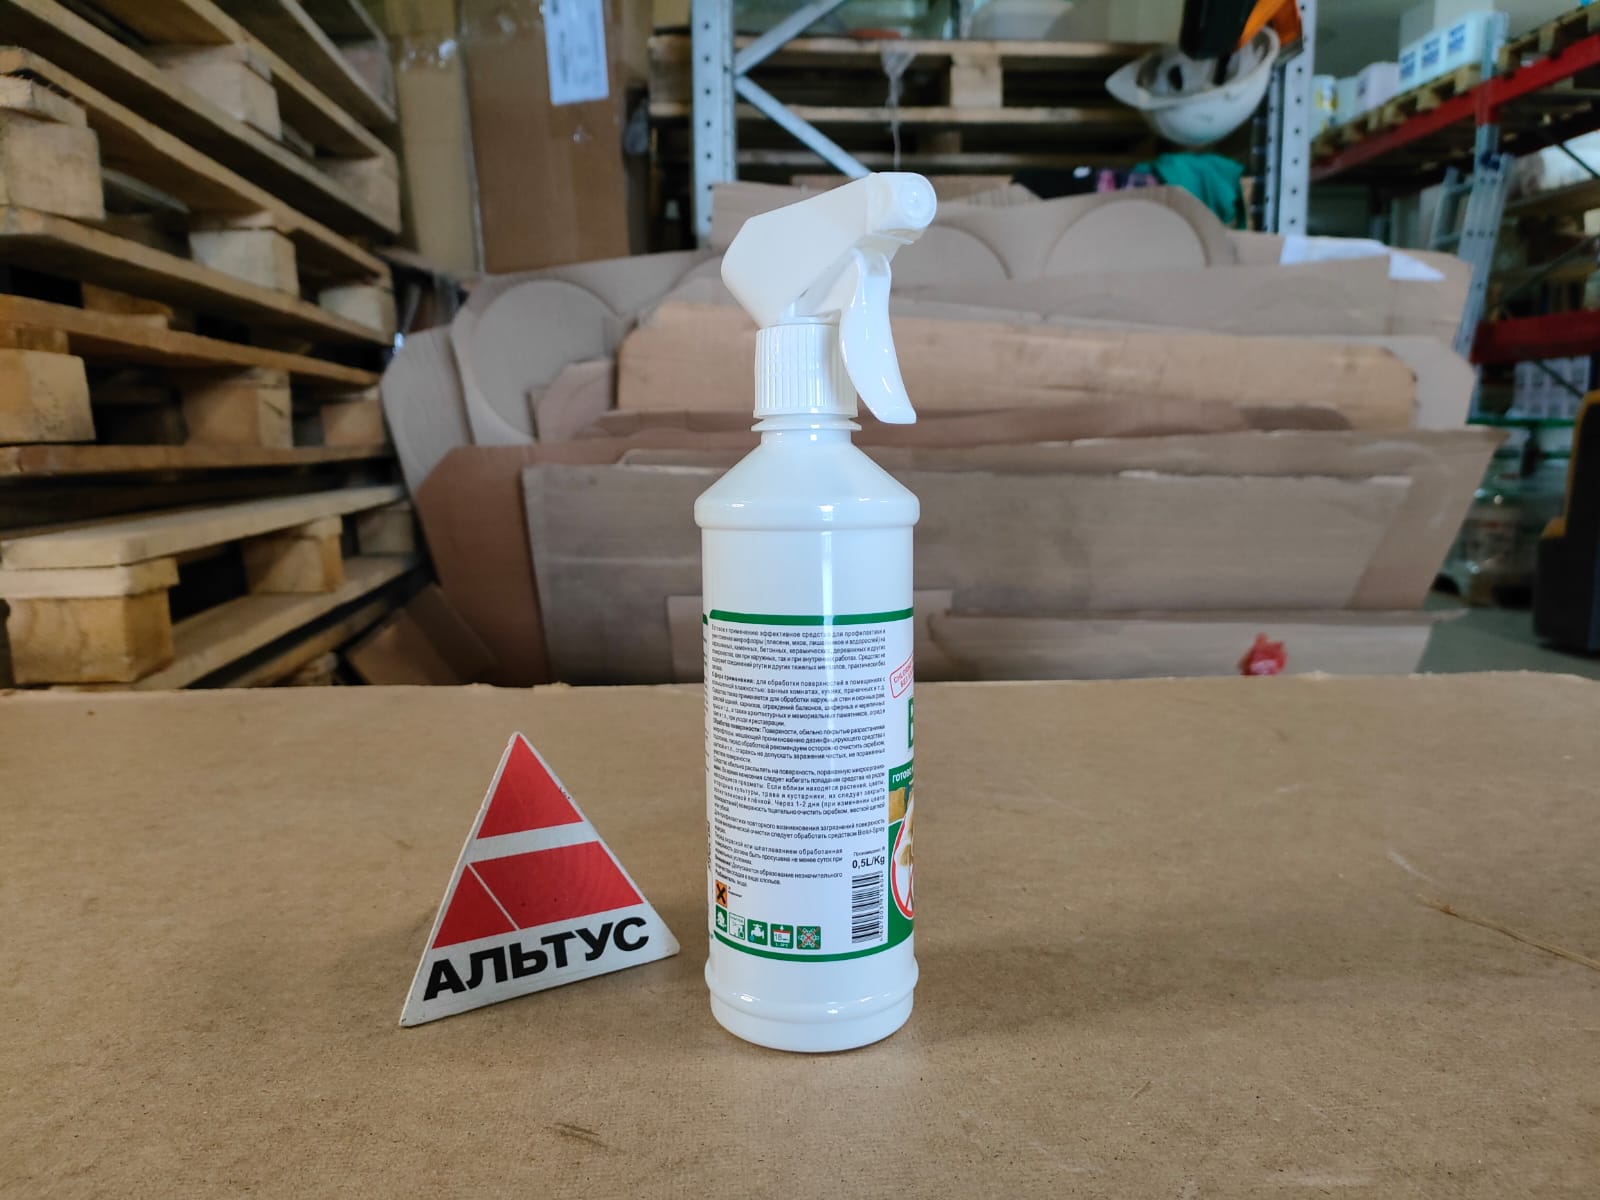 Дезинфицирующее средство против плесени, мхов, лишайников и водорослей 0,5 л Eskaro Biotol Spray